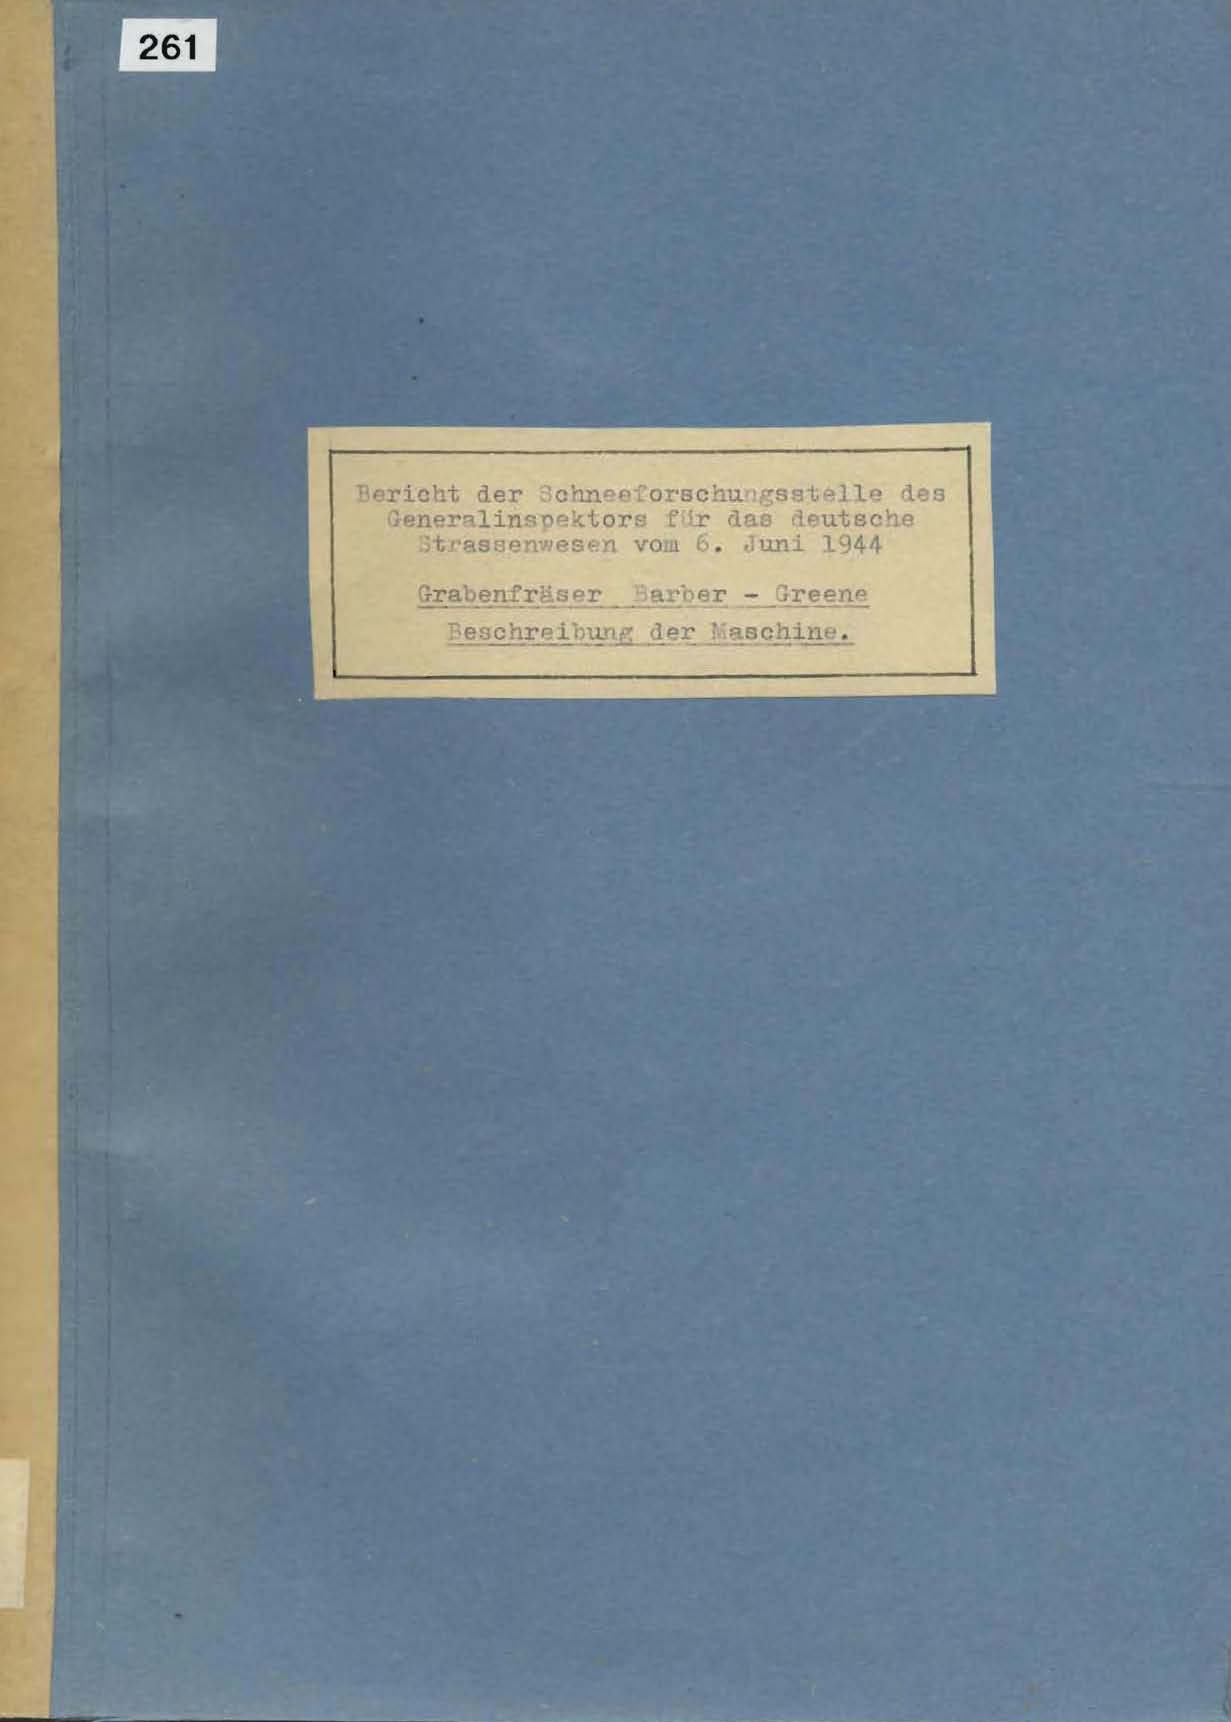 Bericht der Schneeforschungsstelle des Gen. Insp. Für das Deutsche Strassenwesen vom 6. Juni 1944